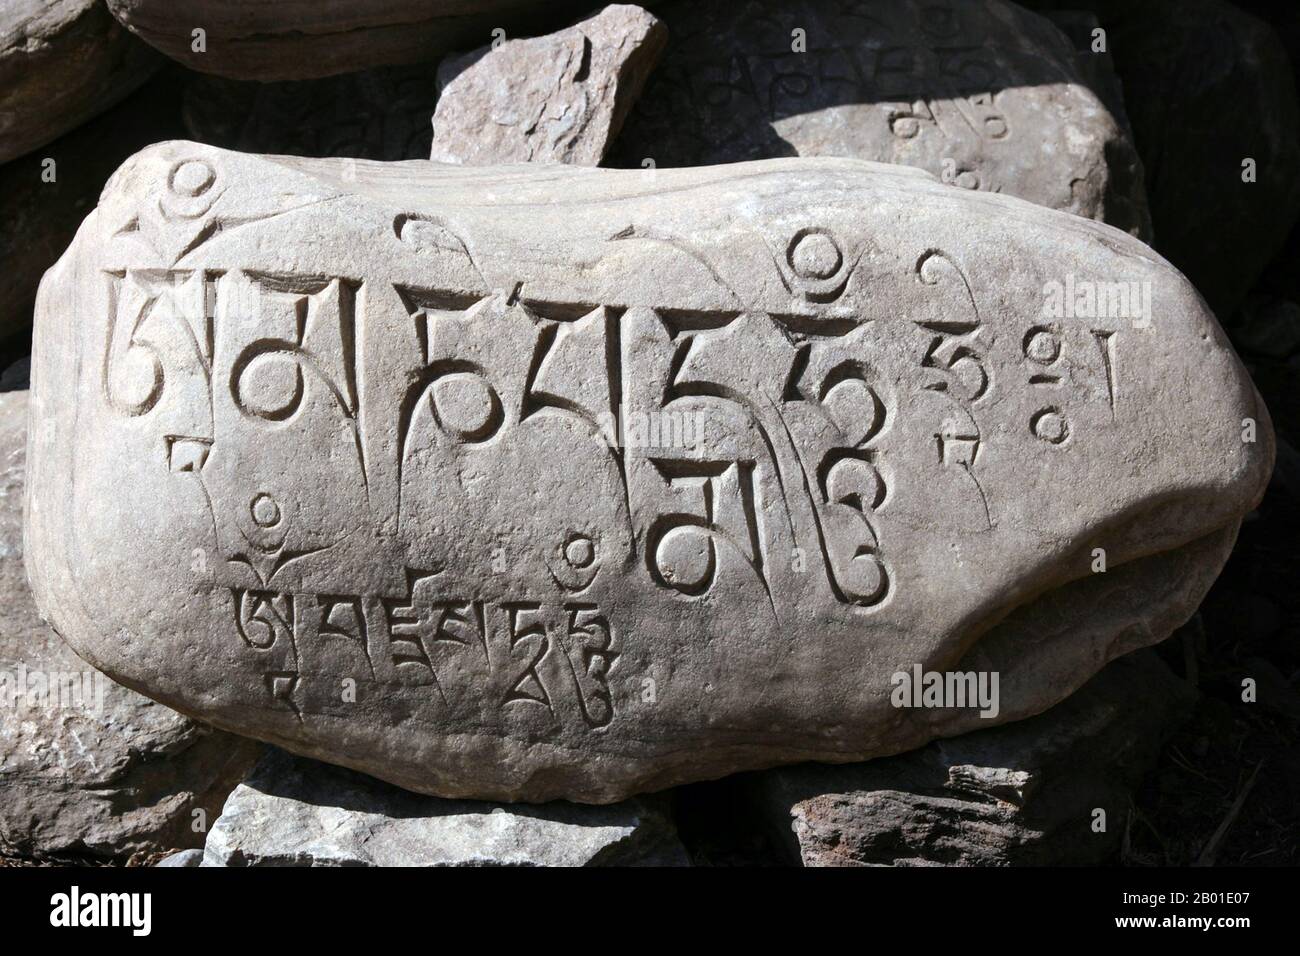 China/Tibet: Ein buddhistischer Mahayana-Mani-Stein mit Mantra in tibetischer Schrift. Foto: Jolly Nomad (CC BY-SA 3,0 Lizenz), 2008. Mani-Steine sind Steinplatten, Steine und/oder Kiesel, die mit dem sechs Silben von Avalokiteshvara (Om mani padme Summ, daher der Name „Mani-Steine“) als Form des Gebets im tibetischen Buddhismus versehen sind. Der Begriff Maniktstein kann auch lose für Steine verwendet werden, auf denen Mantra oder hergebrachte Muster (z. B. Aschtamangala) aufgebracht sind. Maniksteine werden absichtlich entlang der Straßen und Flüsse platziert oder zusammen platziert, um Hügel oder cairns zu bilden. Stockfoto